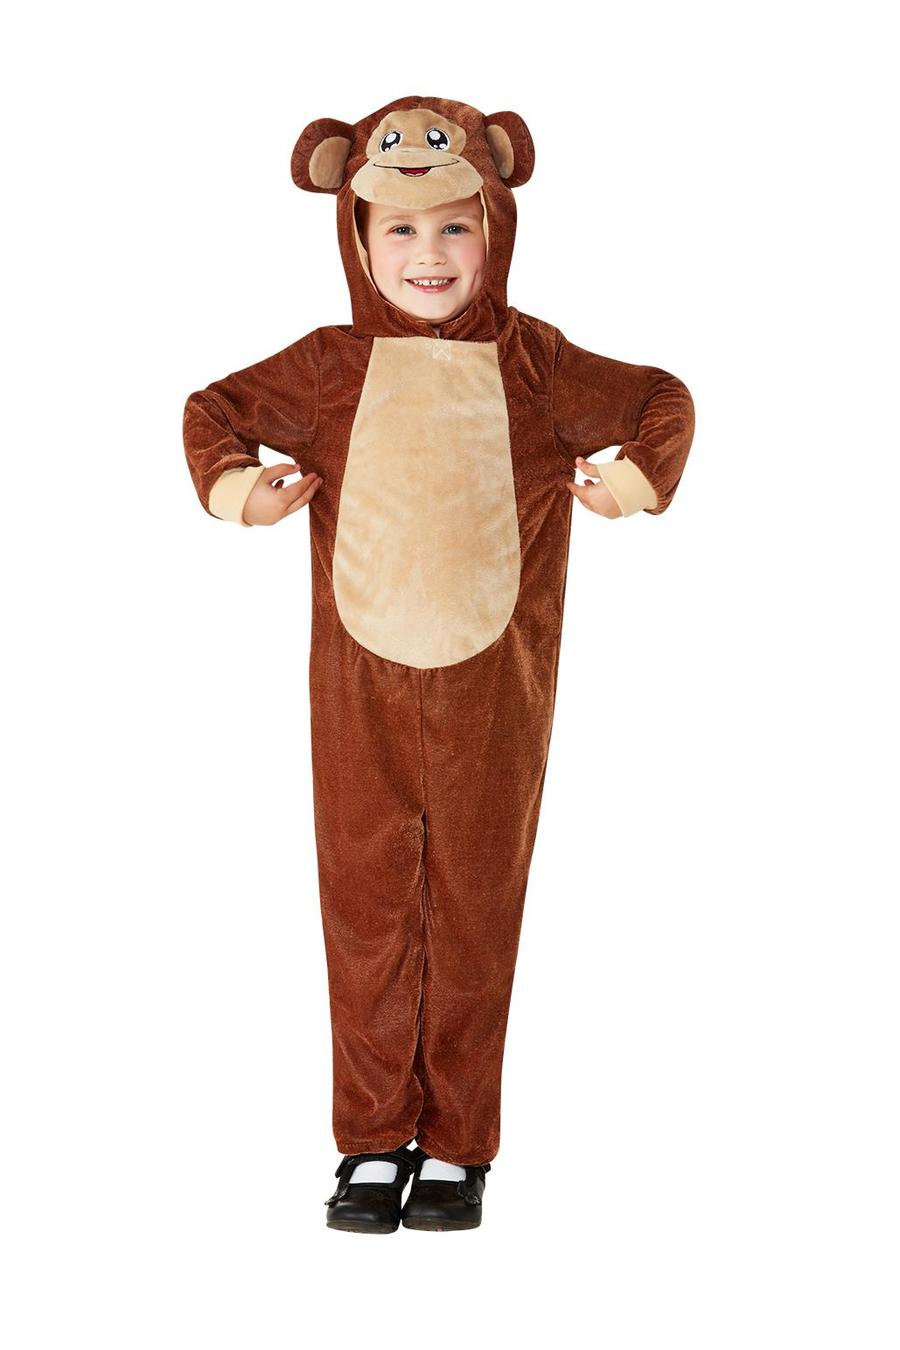 Toddler Monkey Costume Wholesale